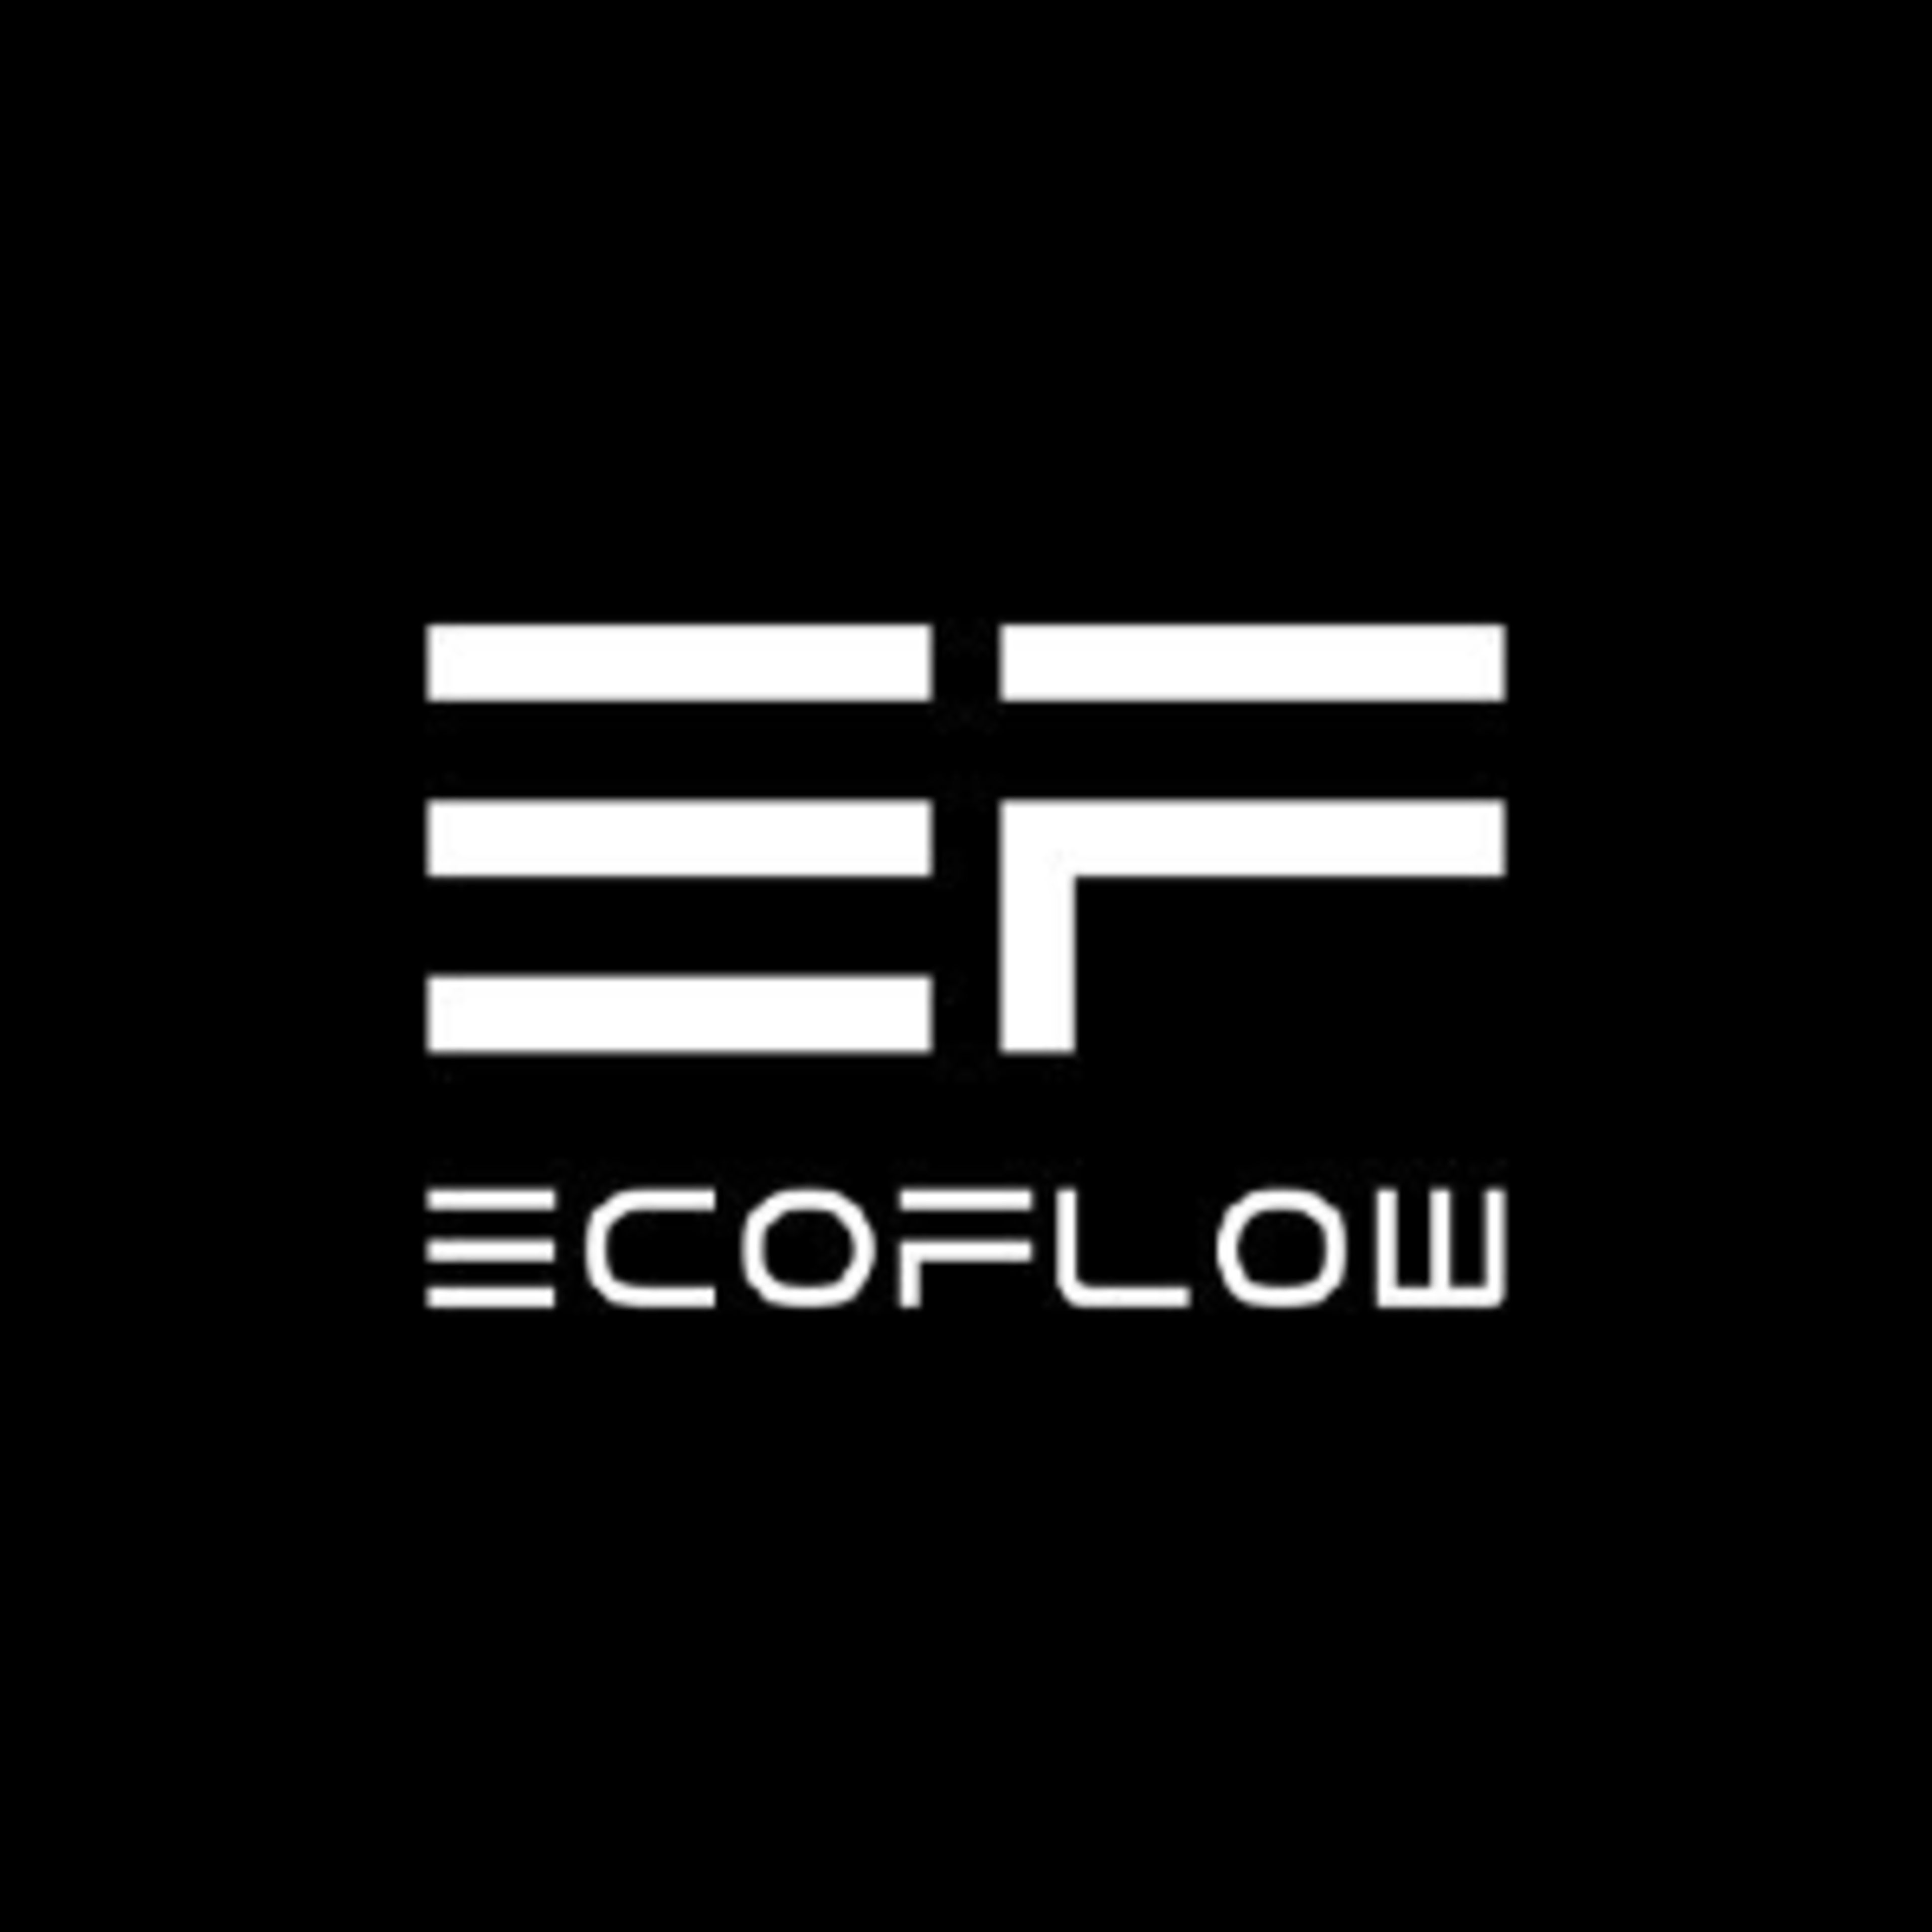 EcoFlowCode